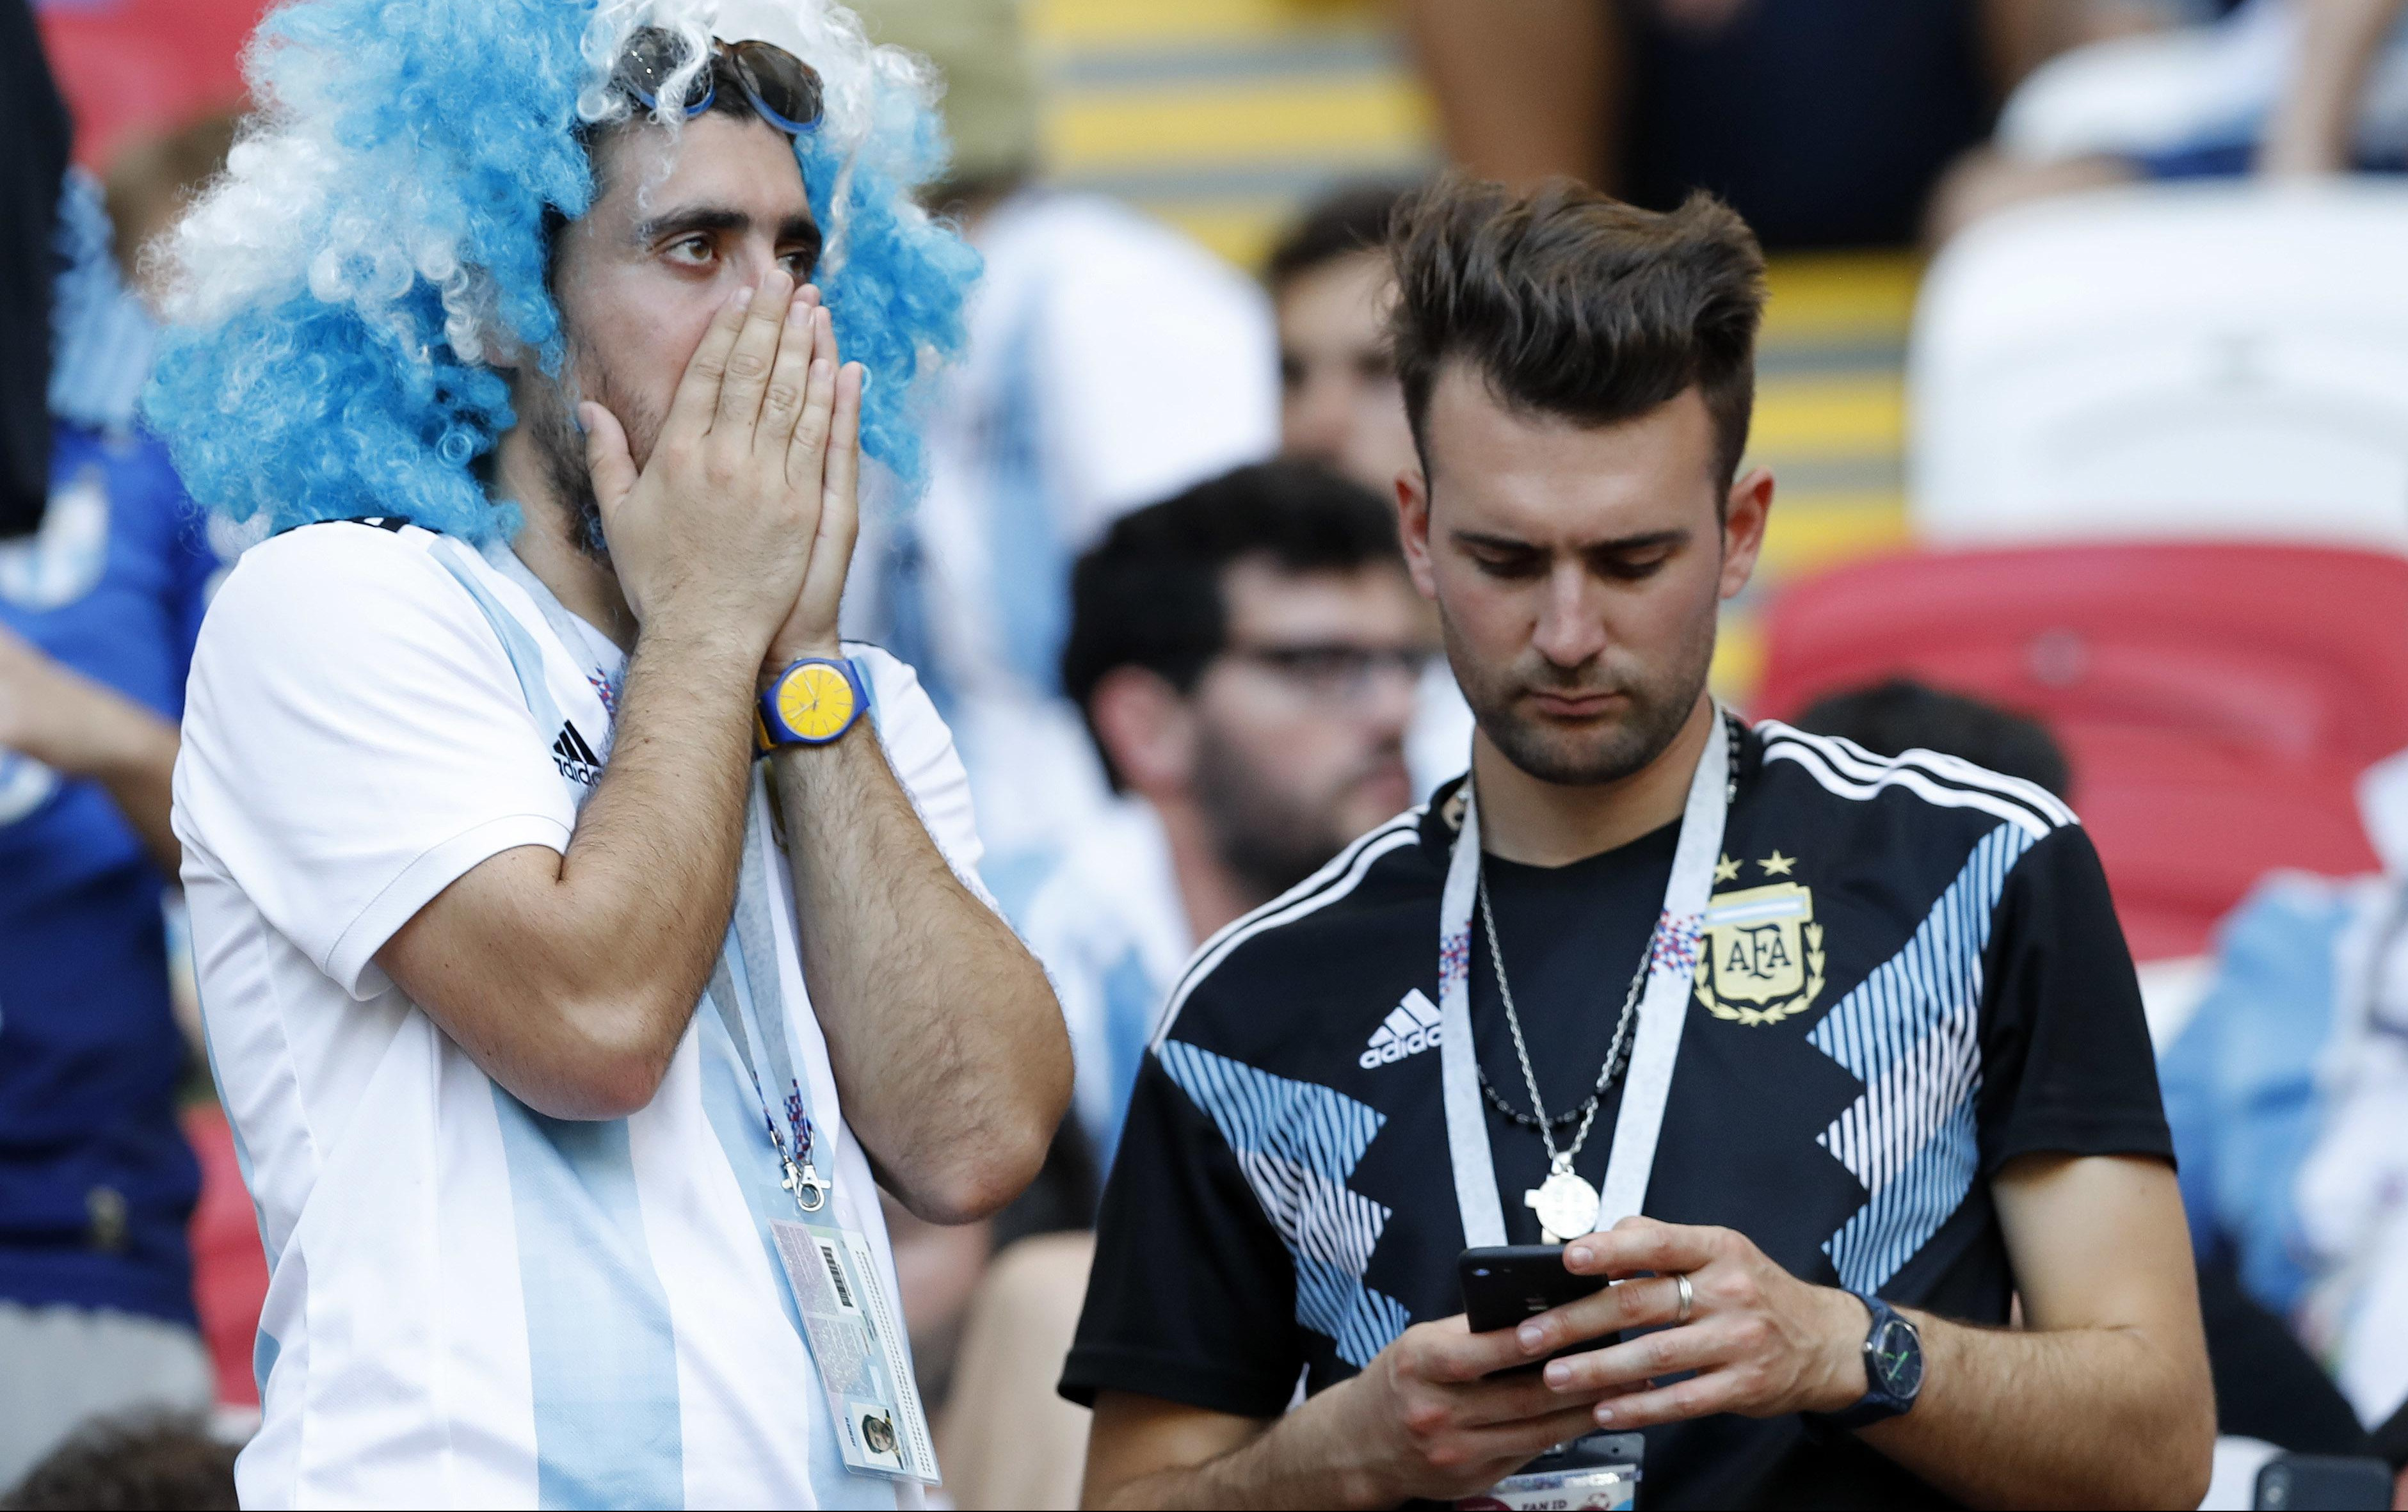 KORONA DIVLJA U ARGENTINI! Fudbal suspendovan! Zna se i do kada!